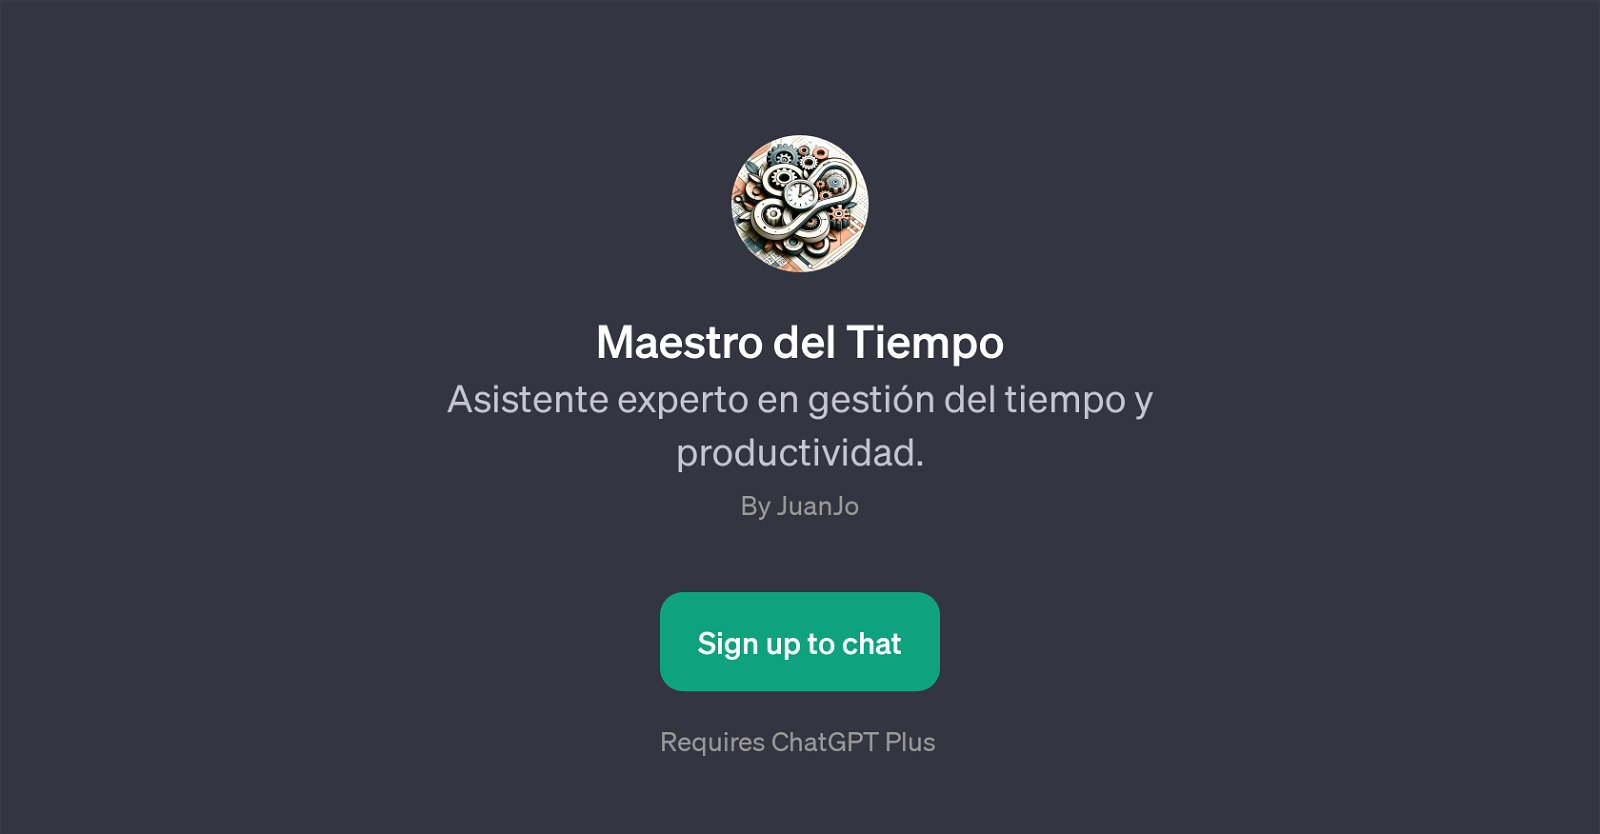 Maestro del Tiempo website